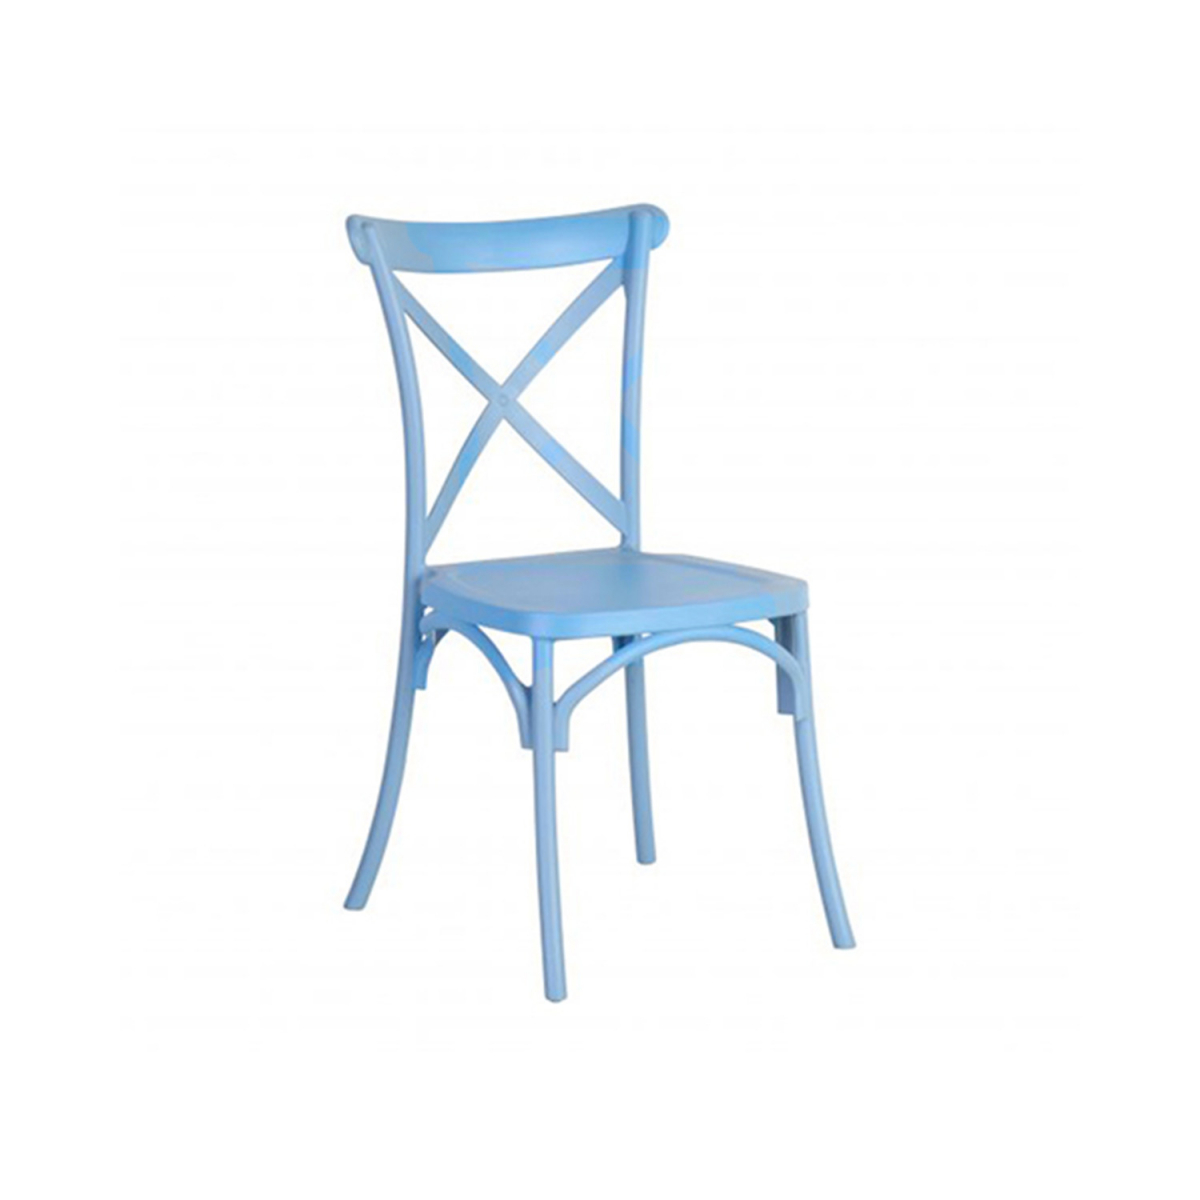 PVC cross back dining chair 